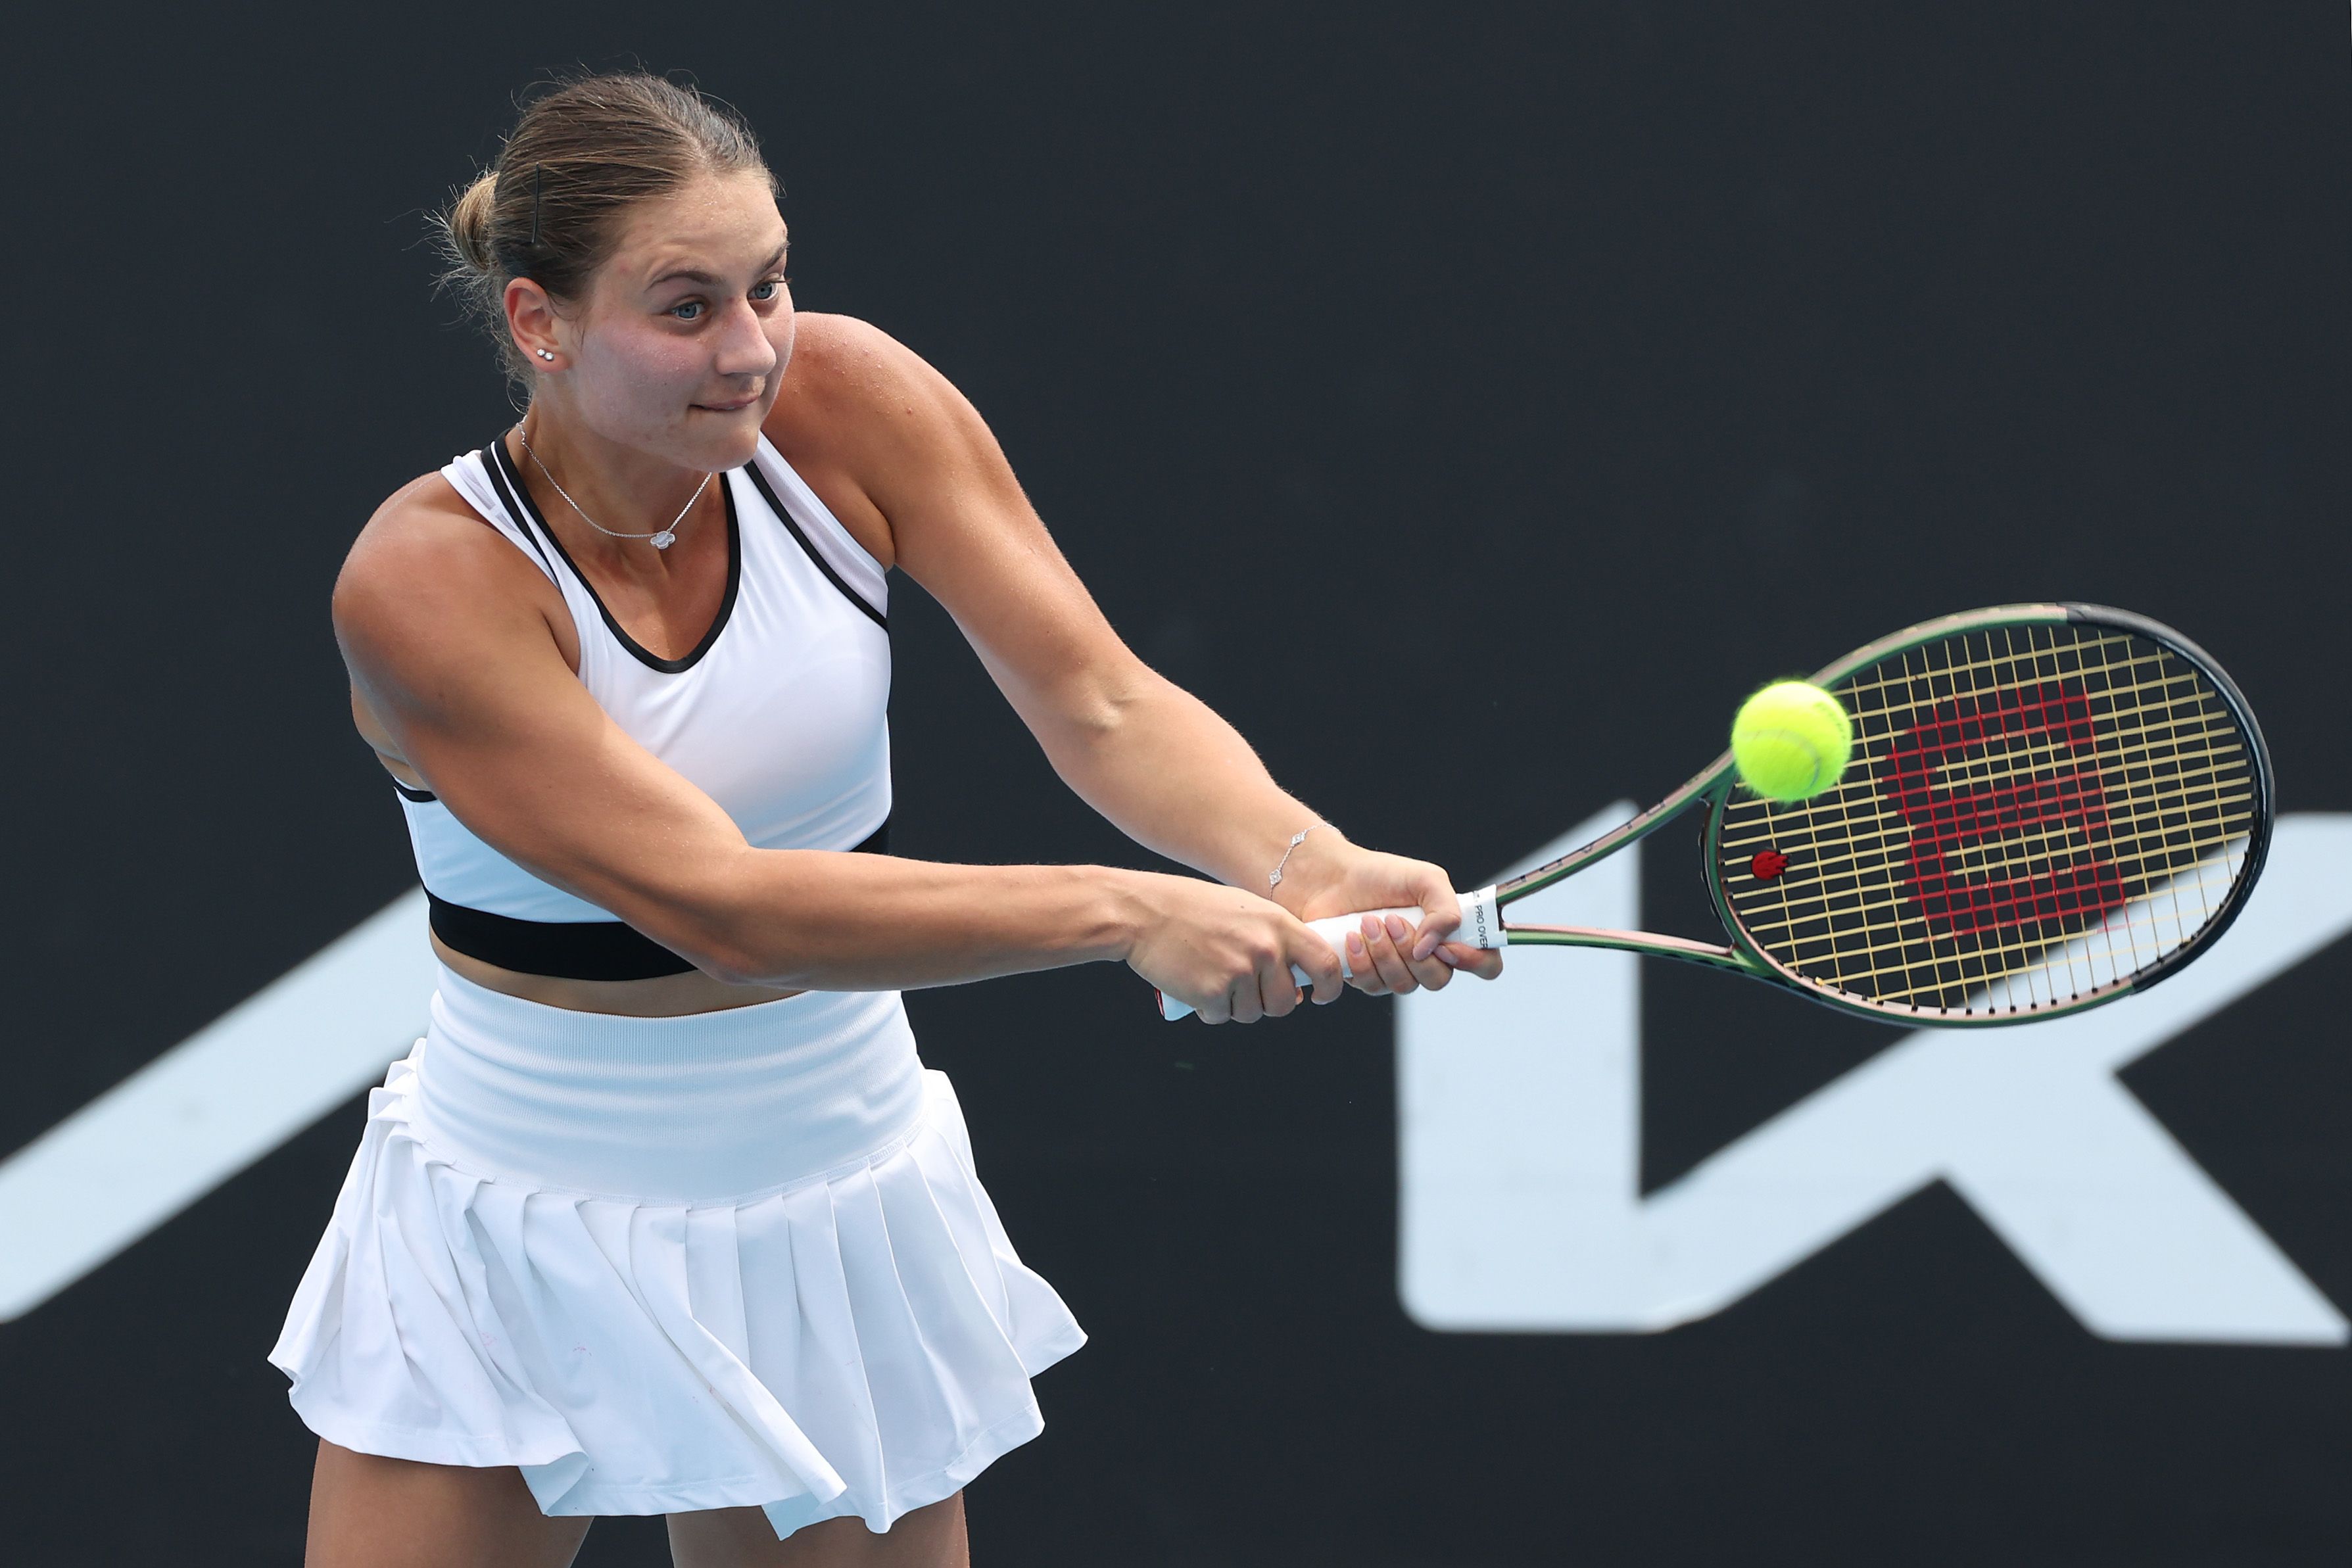 Ukrainian tennis player Marta Kostyuk at the Australian Open